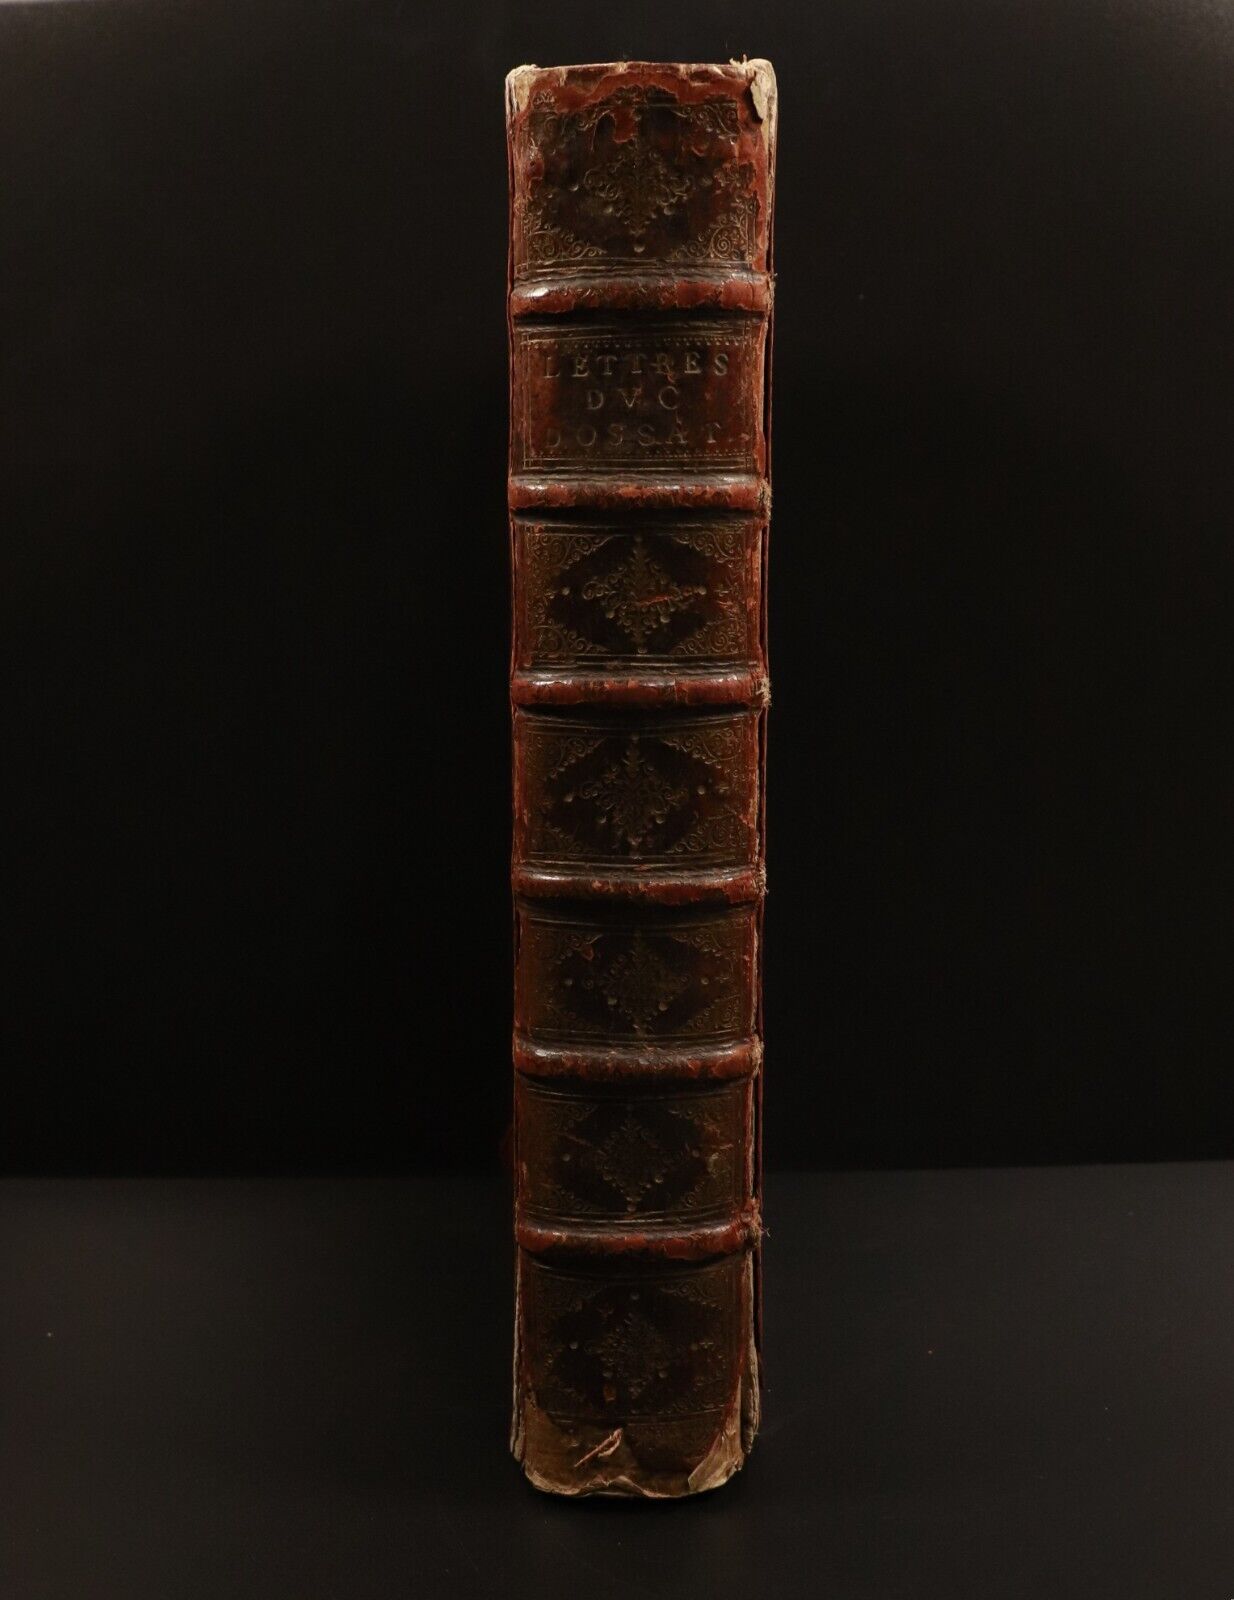 1626 Lettres De L'Illustrissime Cardinal D'Ossat Antiquarian French History Book - 0